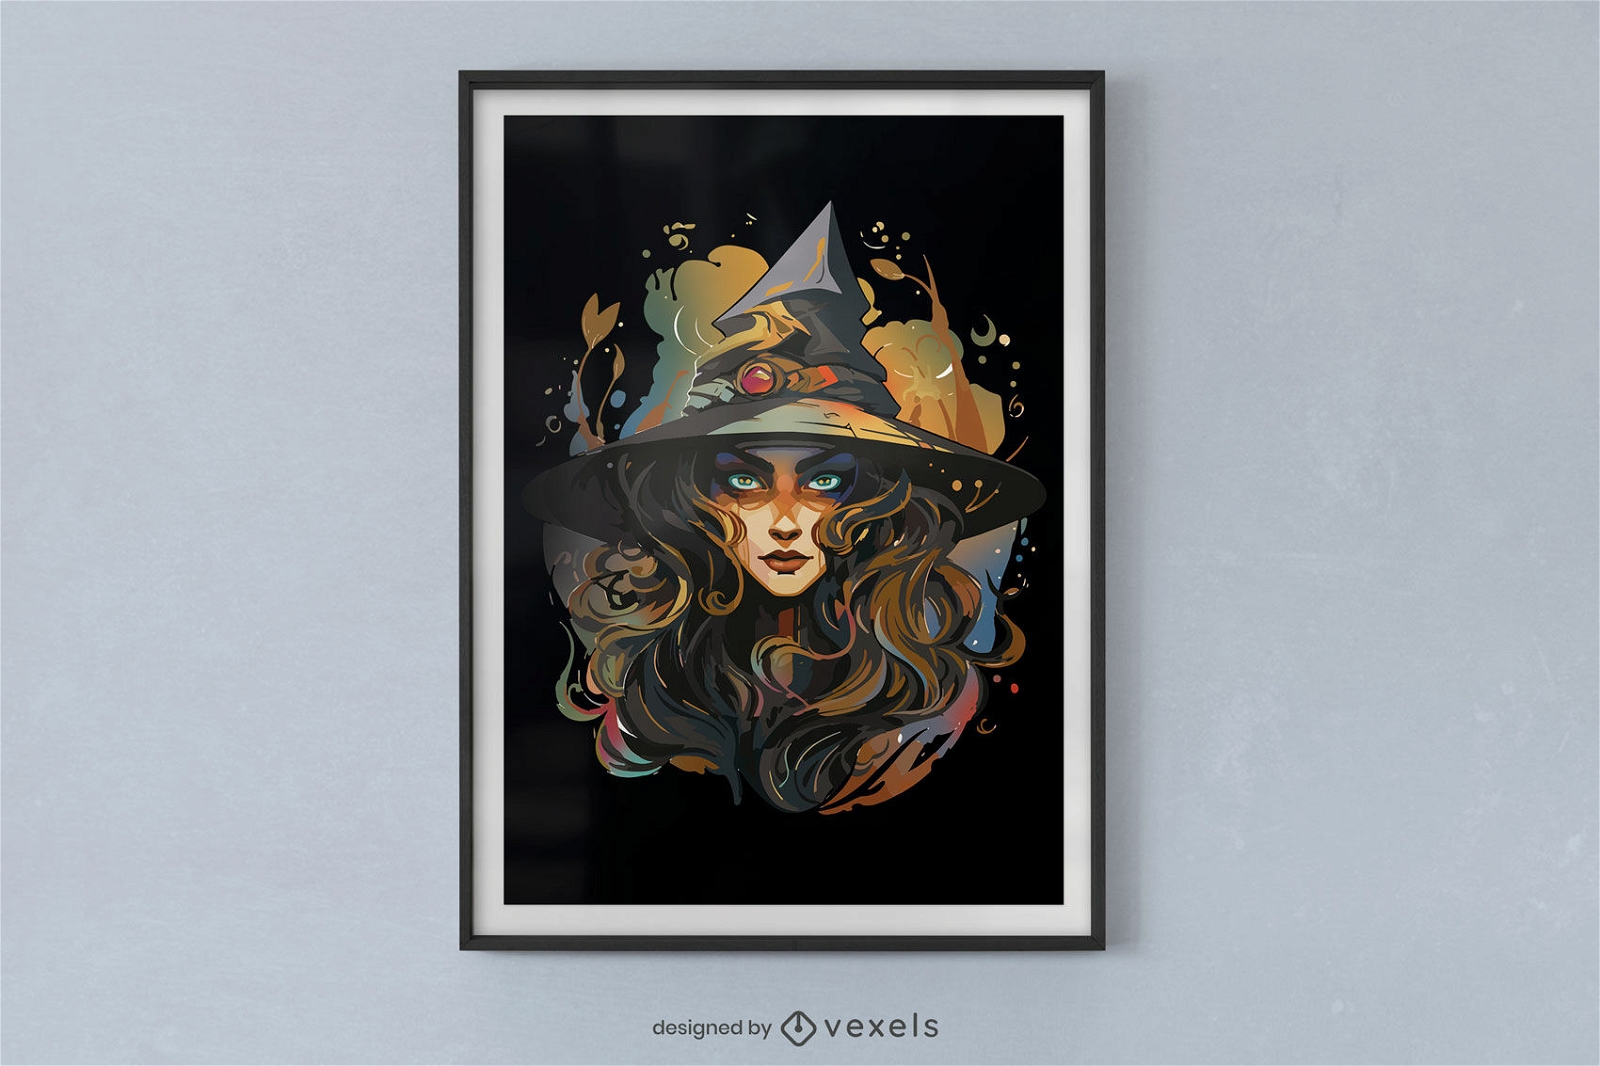 Diseño de cartel de retrato de bruja.